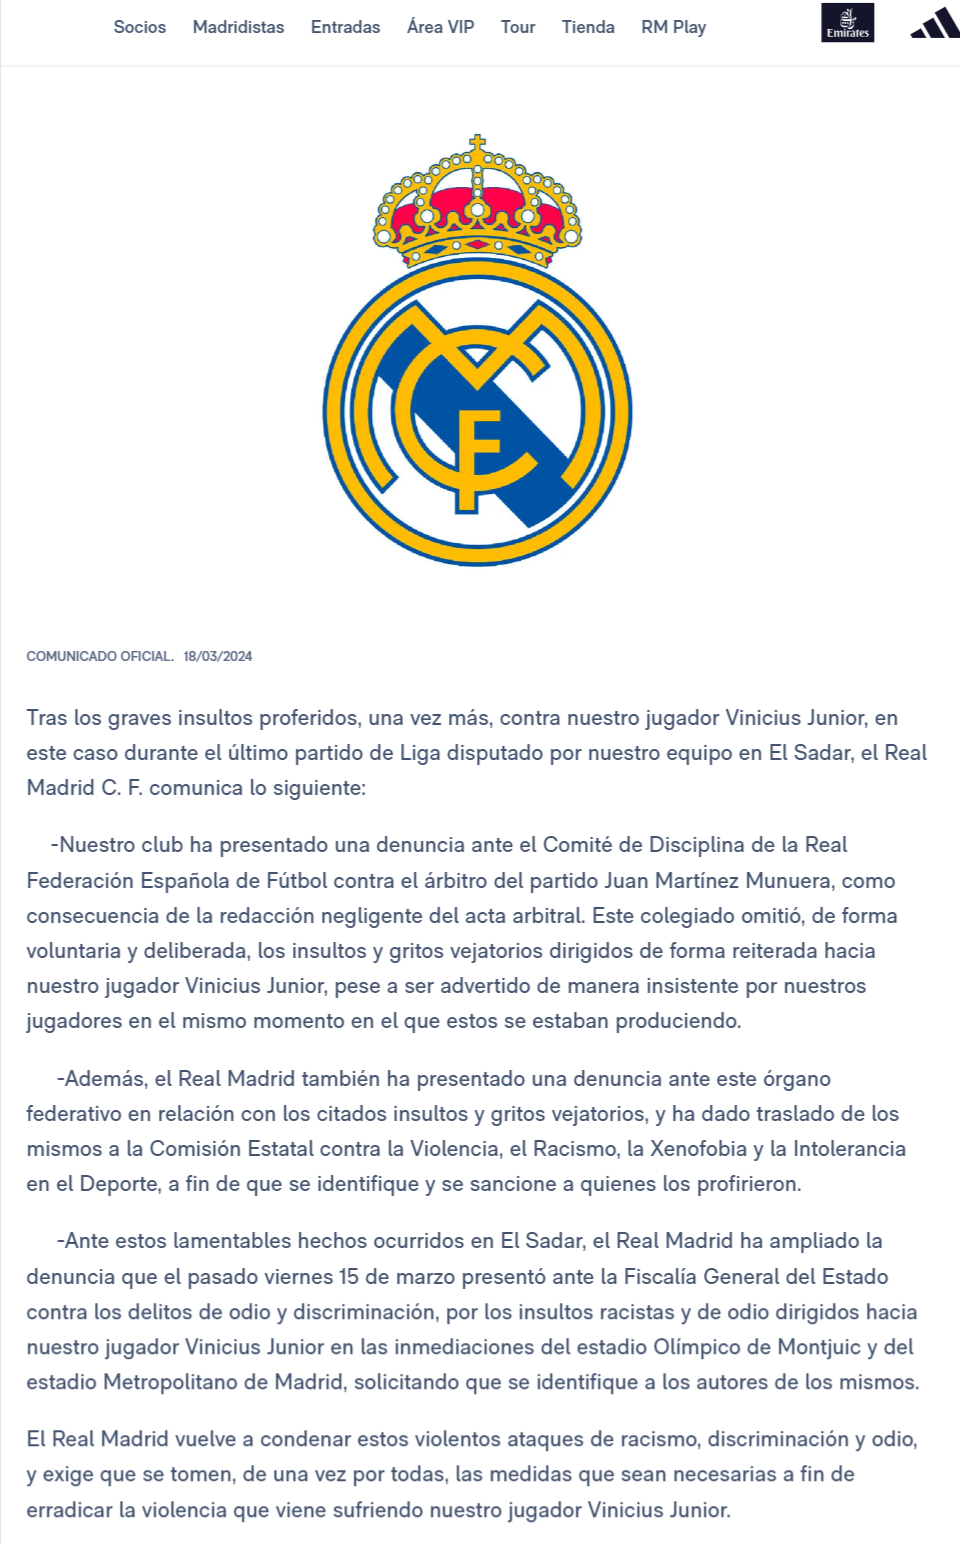 Osasuna - Real Madrid - Página 2 Real-m10